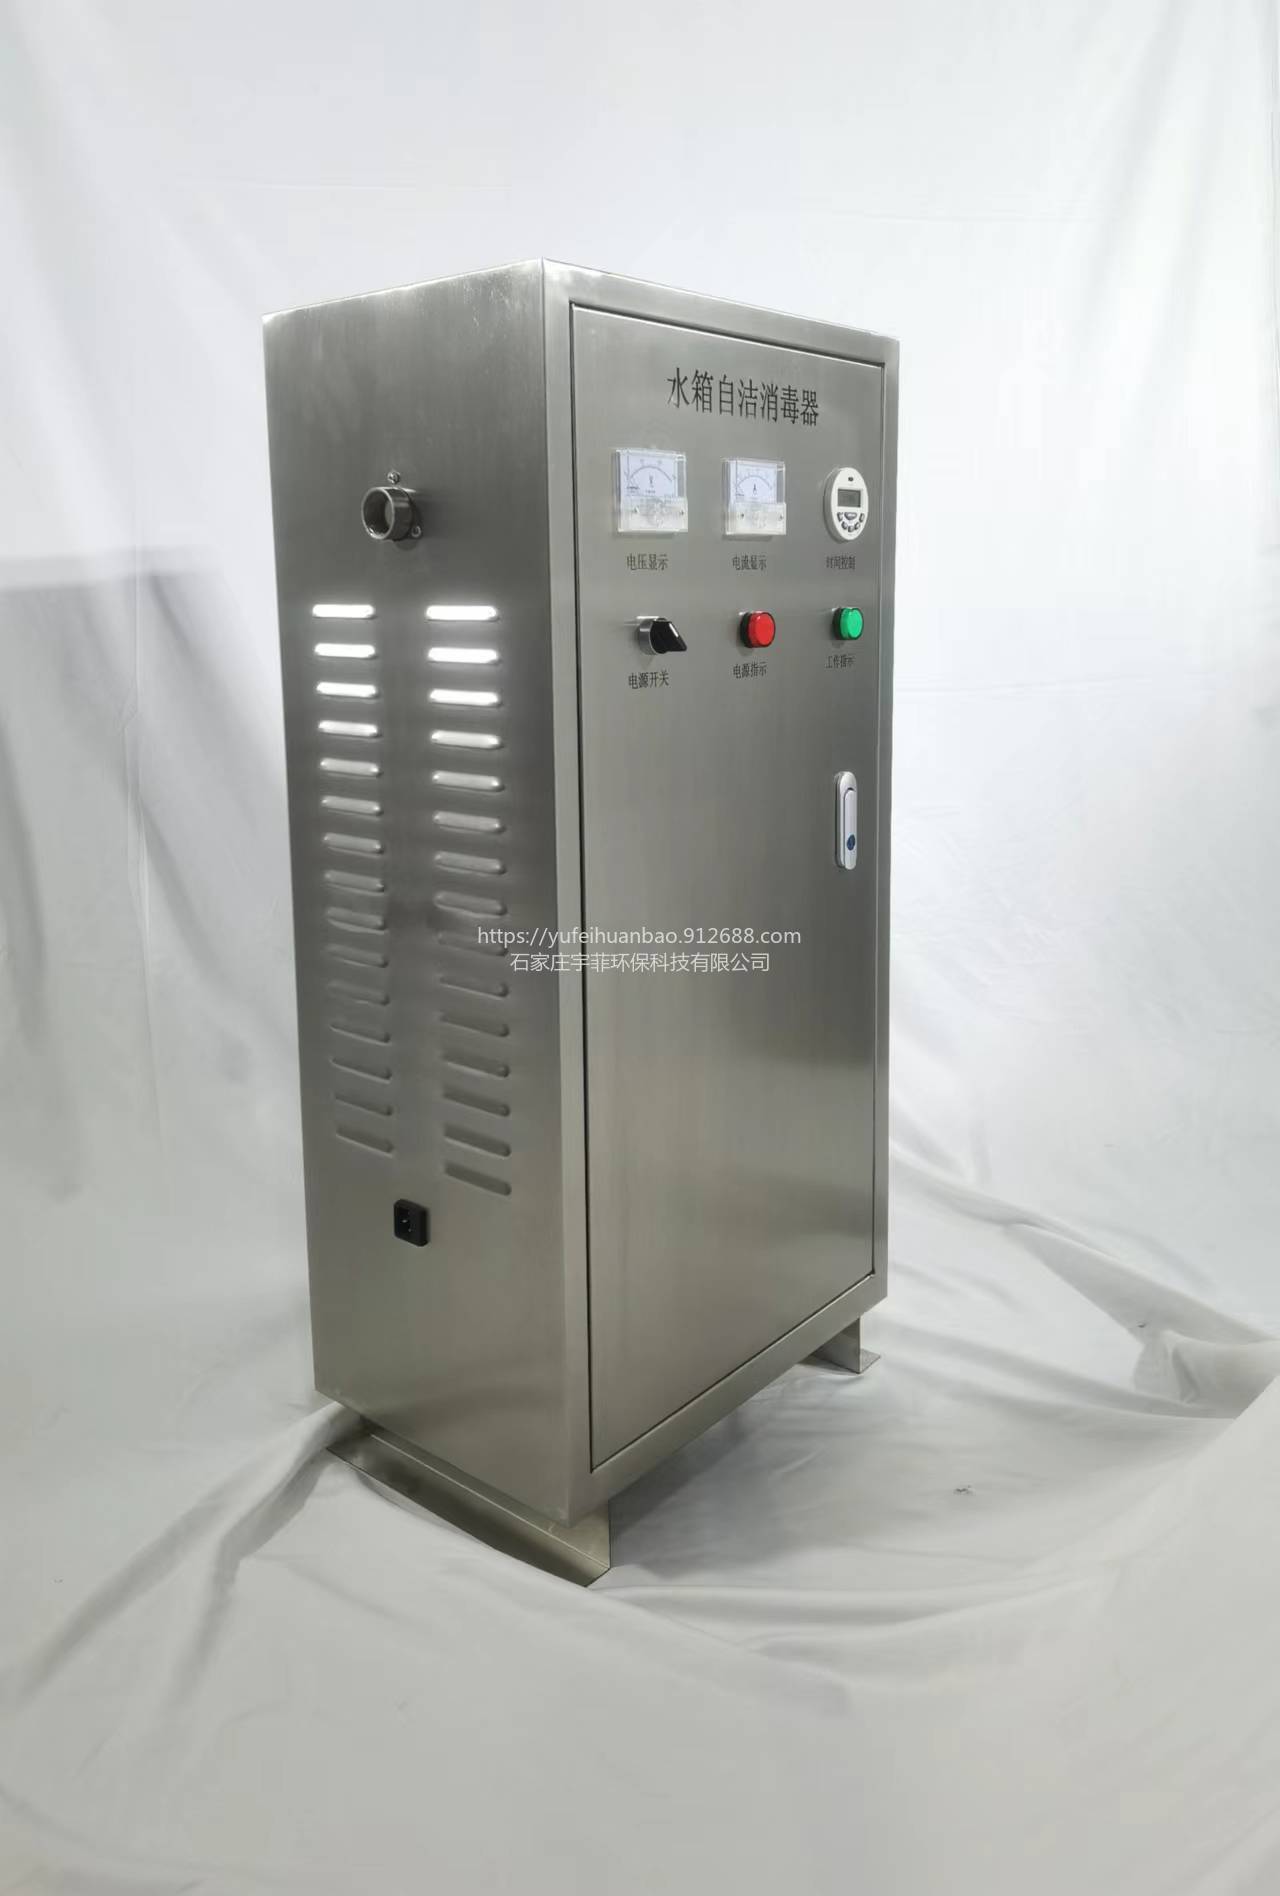 宇菲供应WTS-2A臭氧净化器内置循环泵